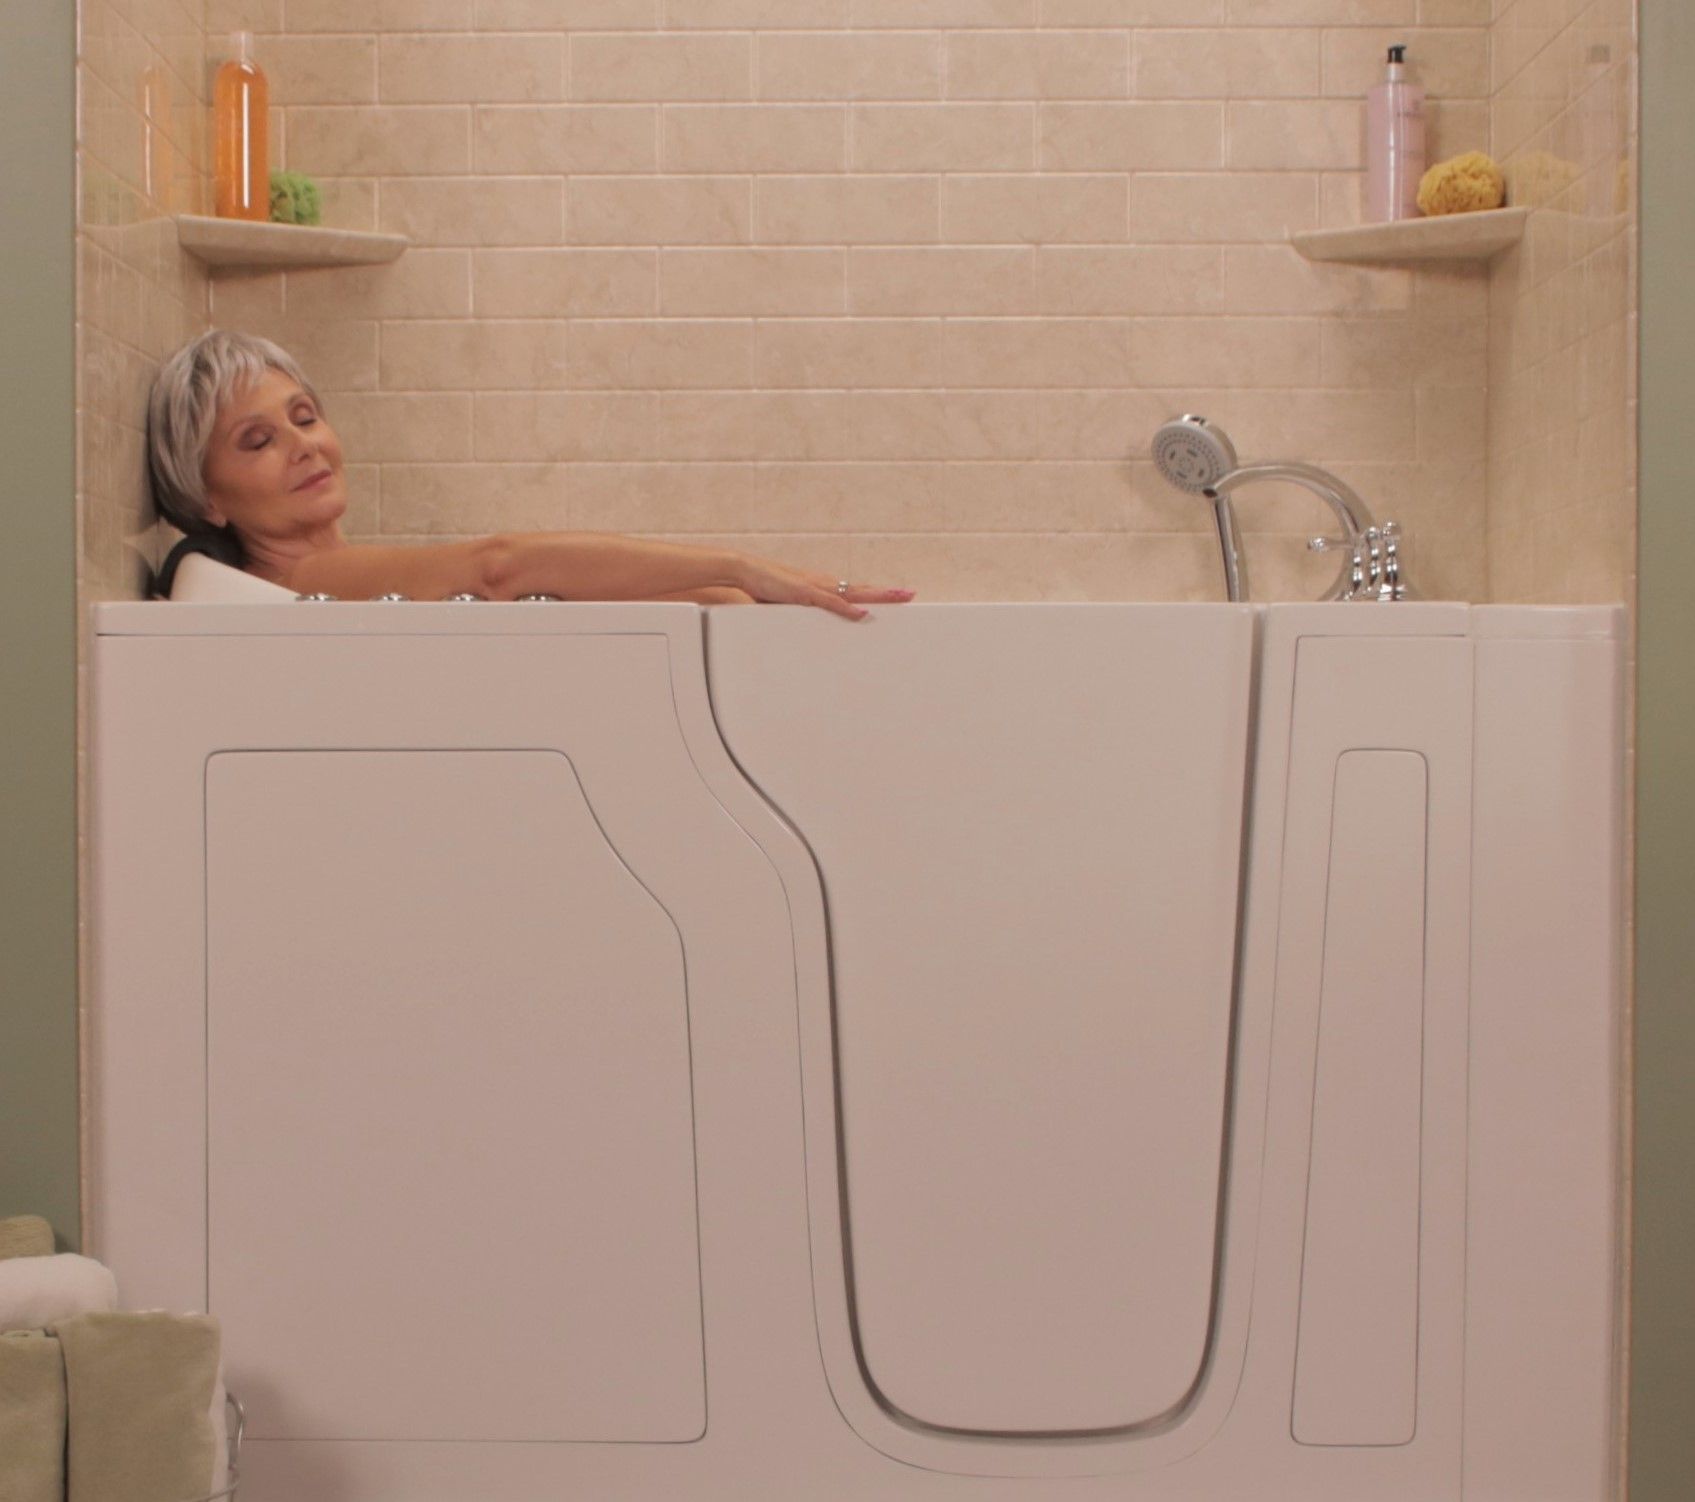 Elderly person sitting in bathtub